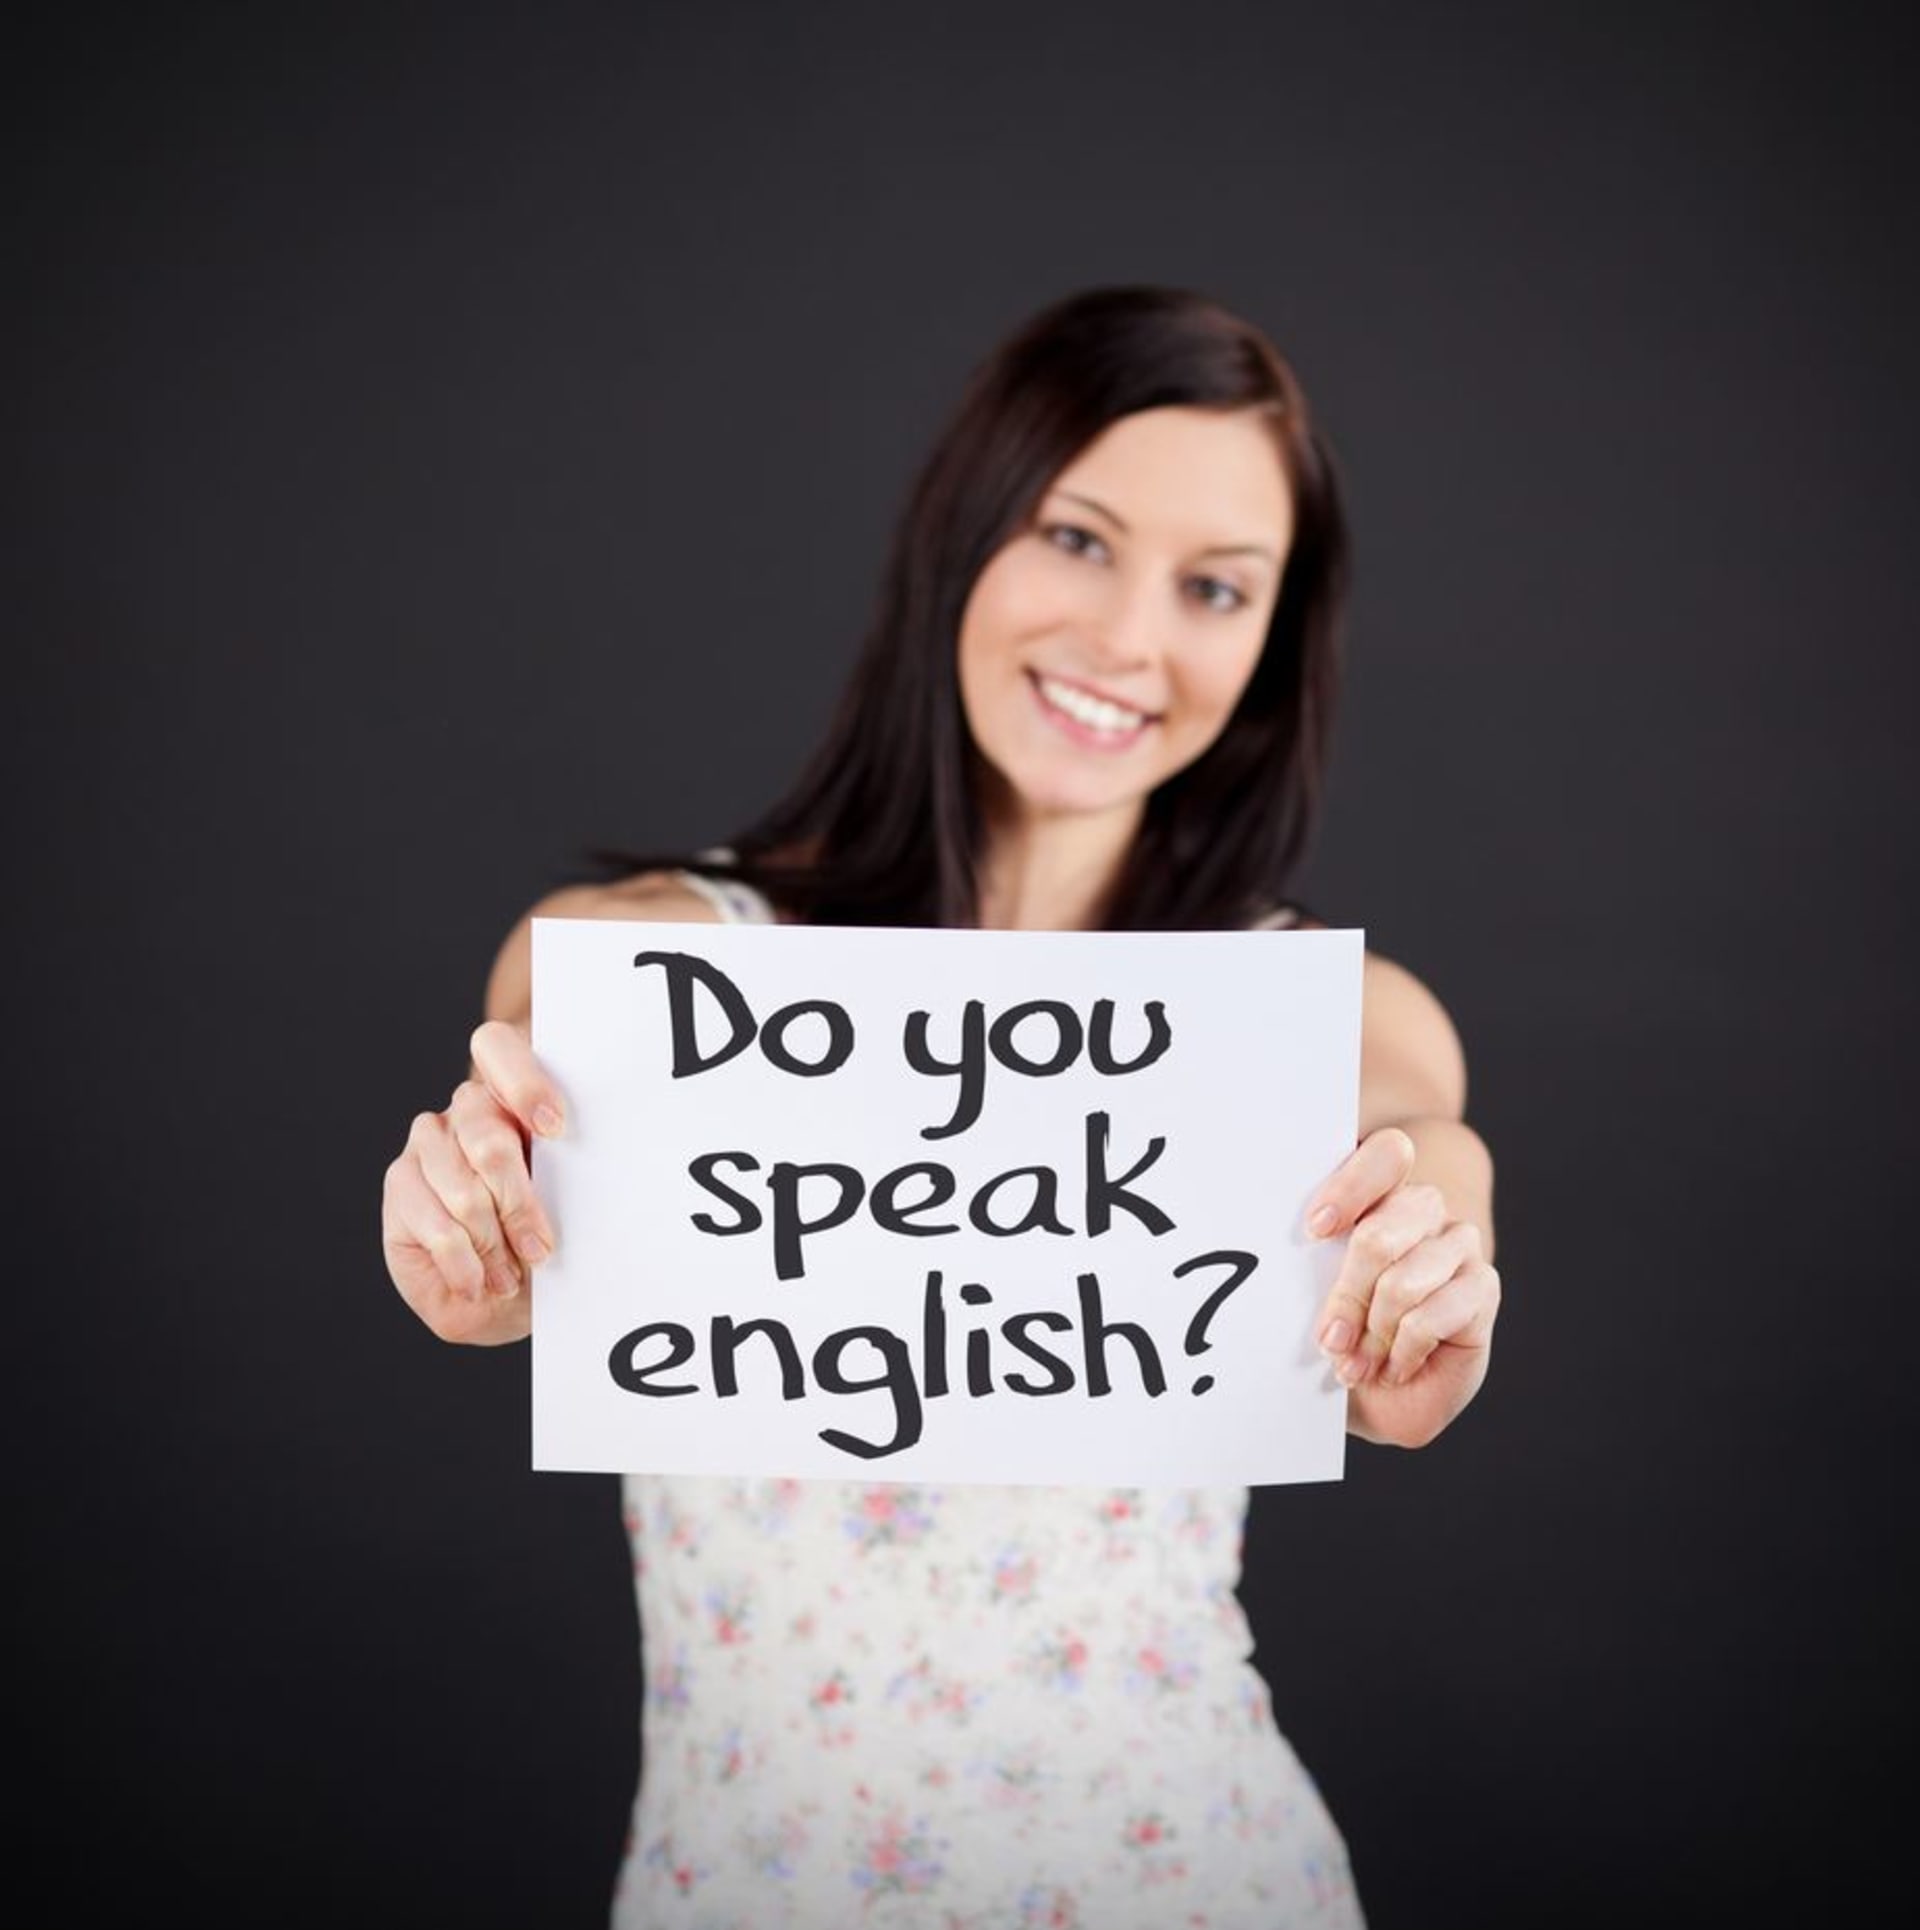 Do you speak english yes. Do you speak English. I speak English картинка. Do you speak English фото. Do you speak English на доске.